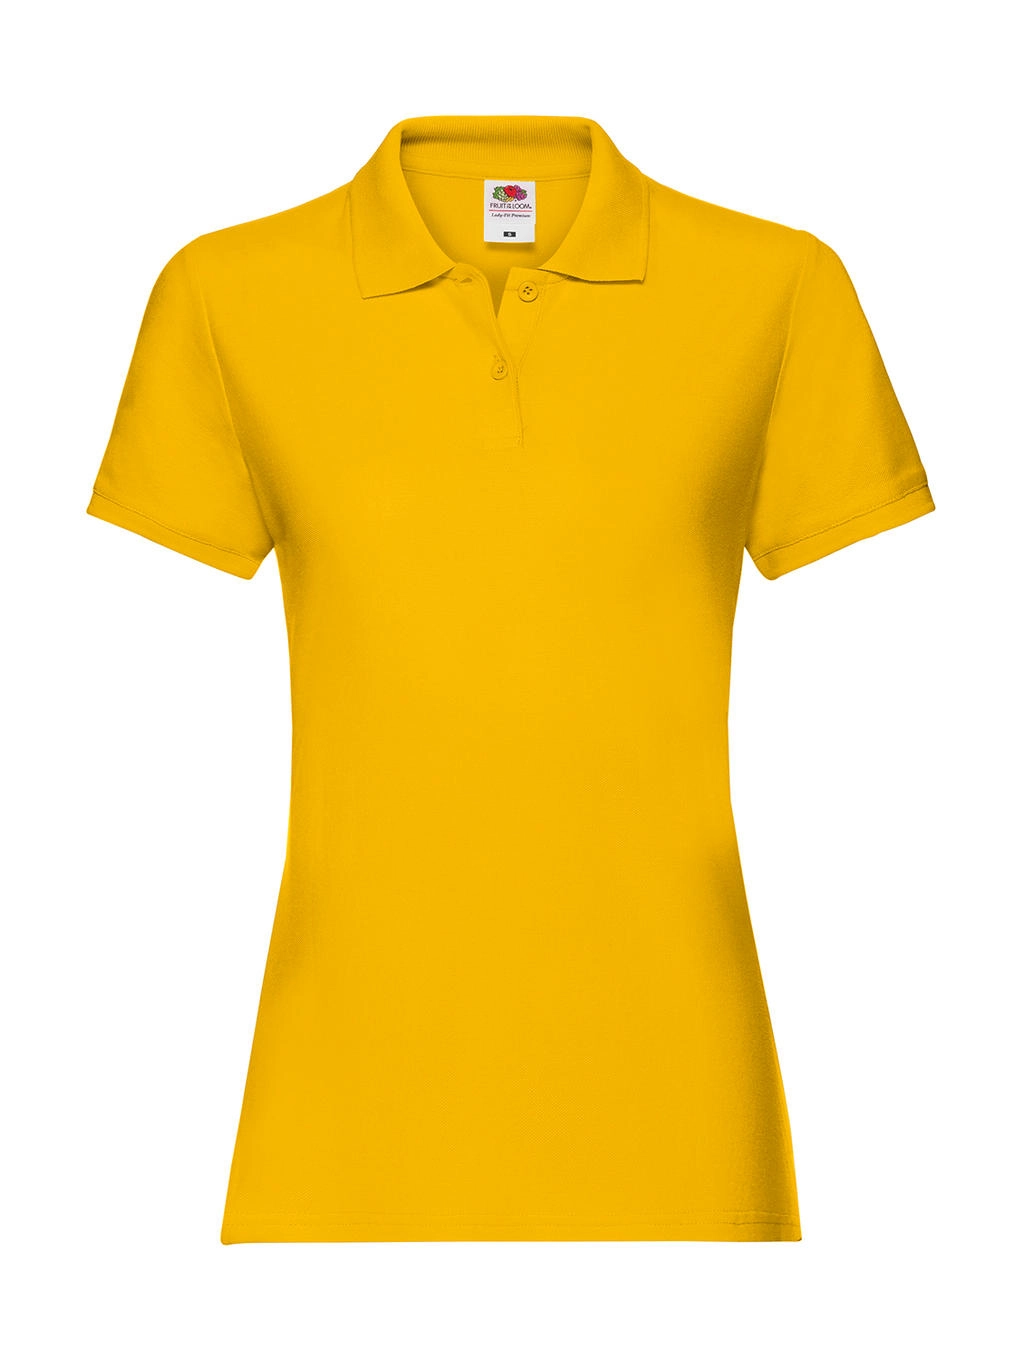 Ladies` Premium Polo zum Besticken und Bedrucken in der Farbe Sunflower mit Ihren Logo, Schriftzug oder Motiv.